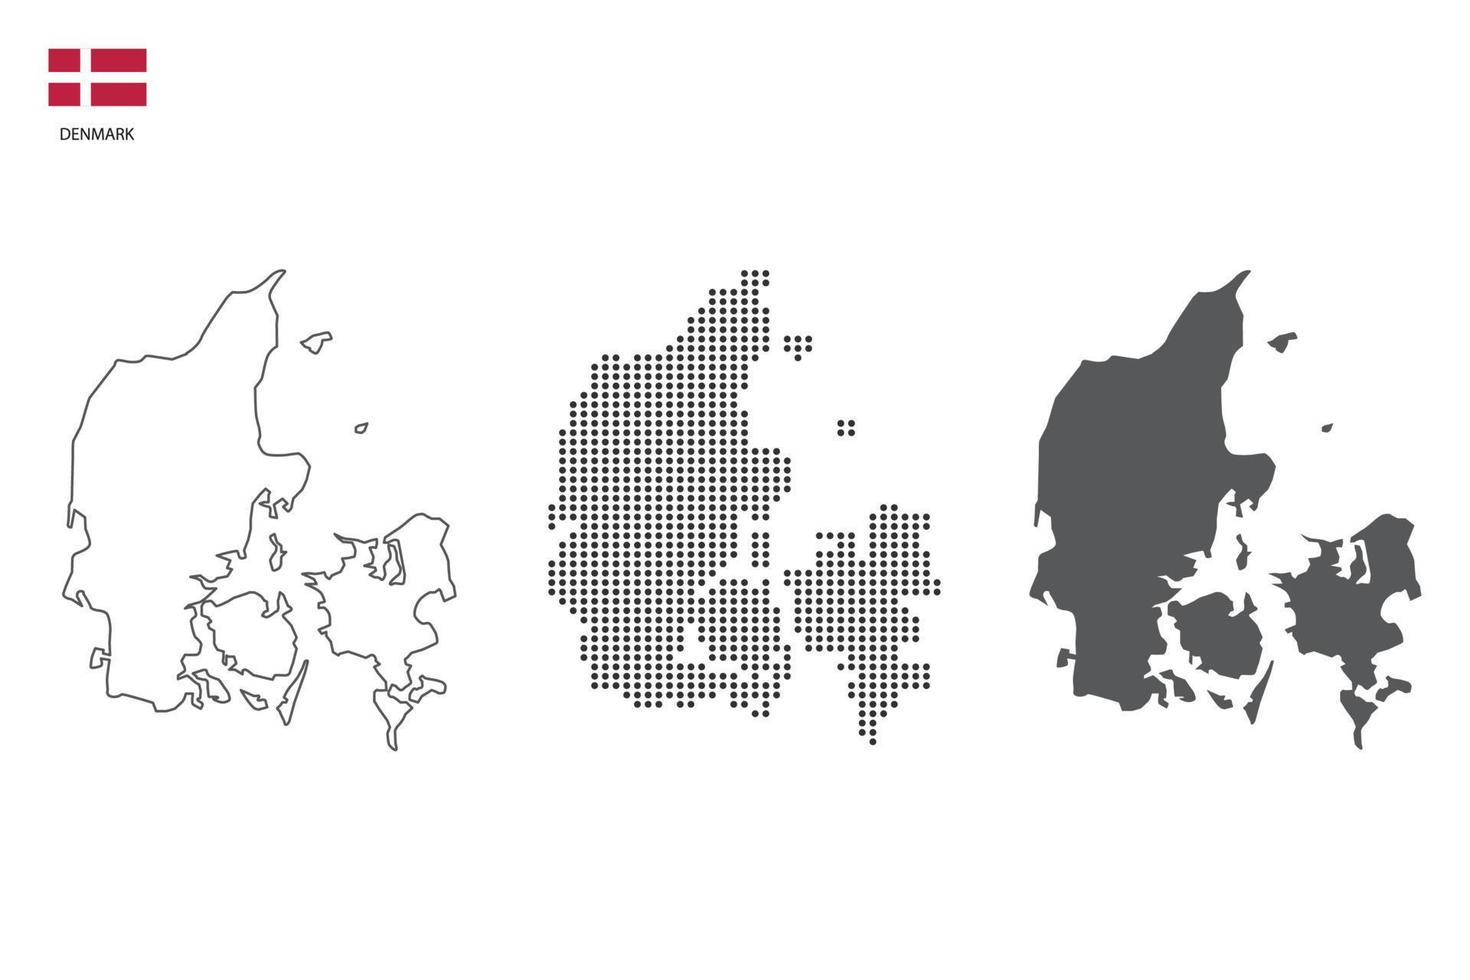 3 versiones del vector de ciudad de mapa de dinamarca por estilo de simplicidad de contorno negro delgado, estilo de punto negro y estilo de sombra oscura. todo en el fondo blanco.